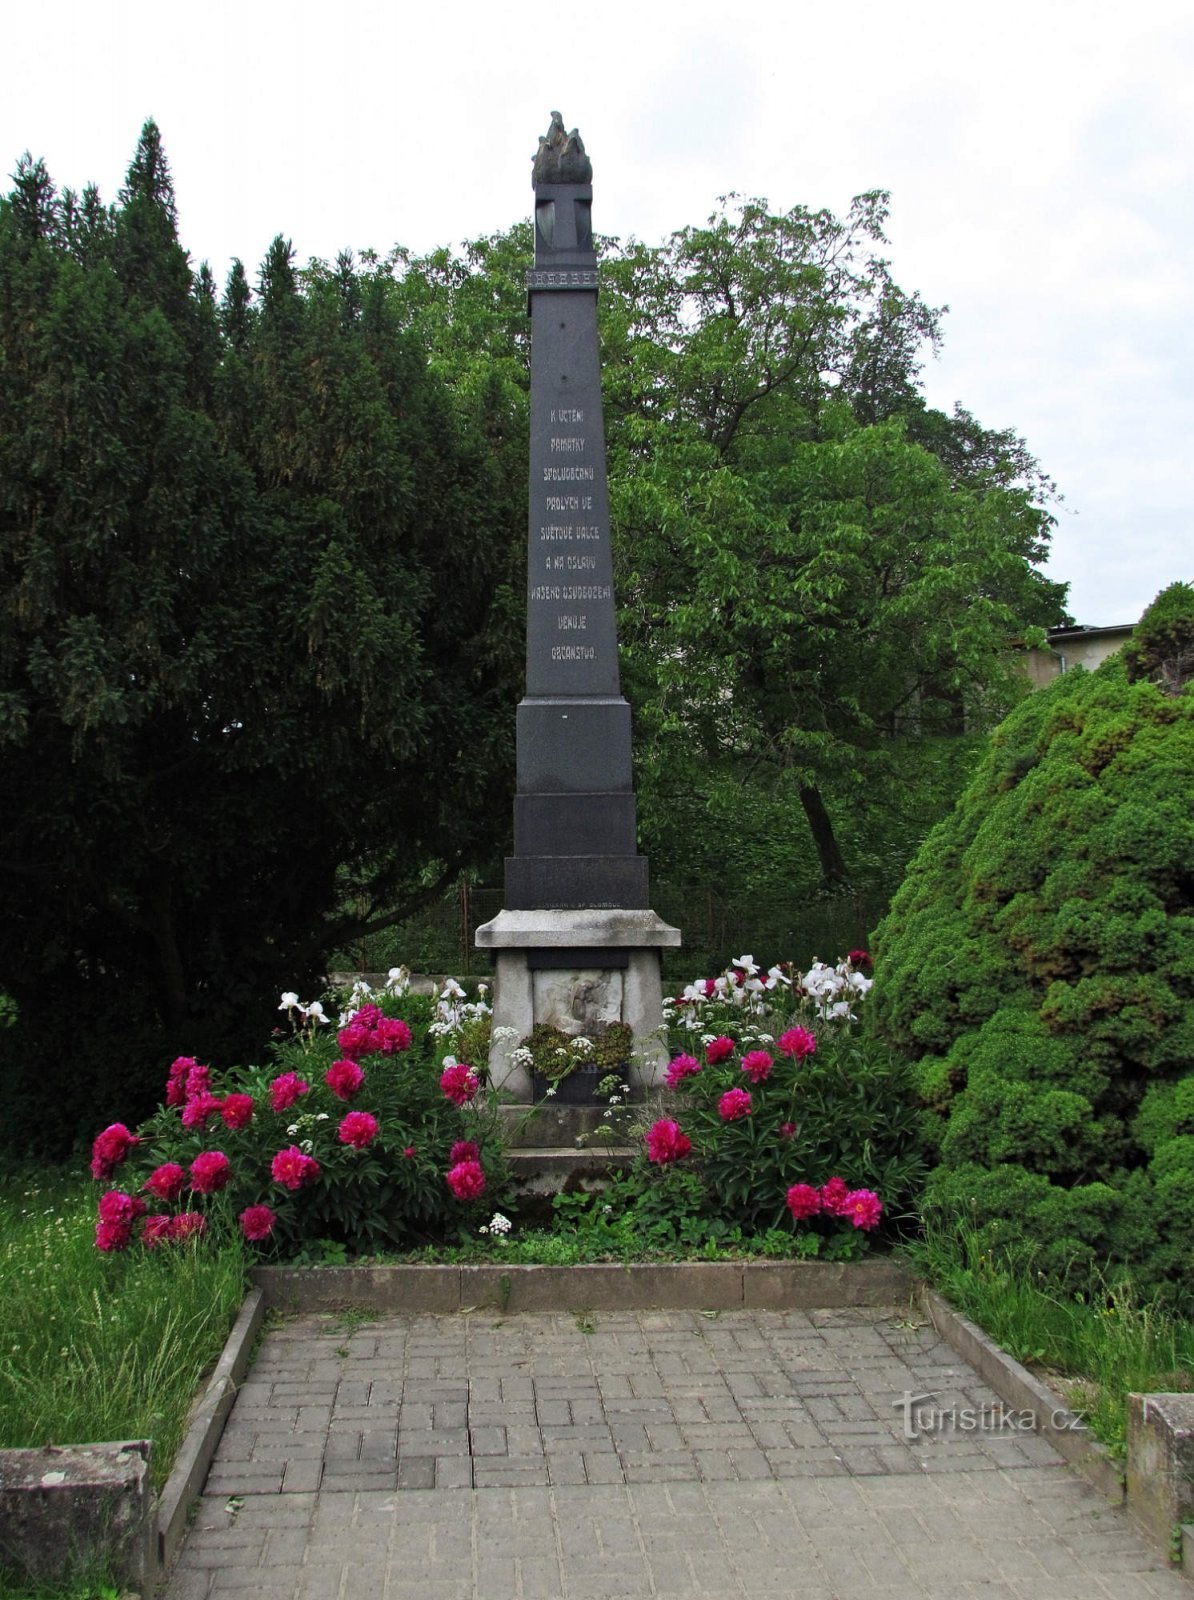 第一次世界大战阵亡者纪念碑